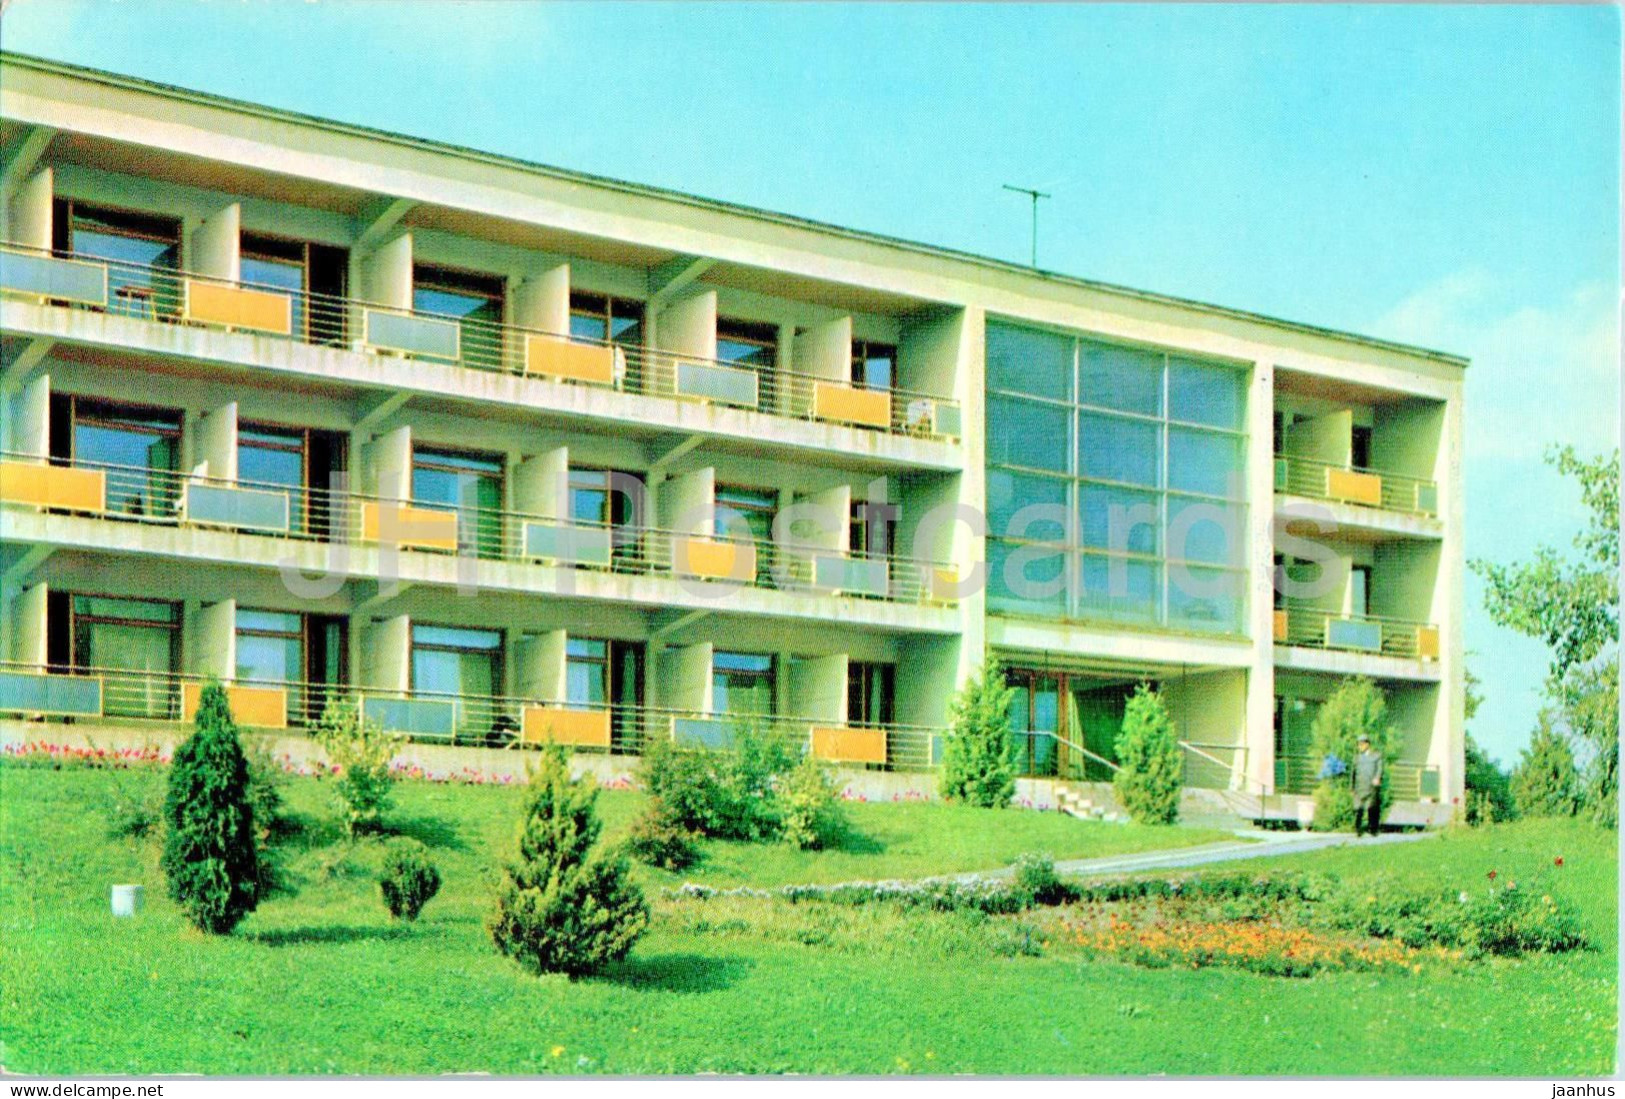 Truskavets - Sanatorium Khrustalnyi Dvorets Bedroom Building - 1970 - Ukraine USSR - Unused - Ukraine